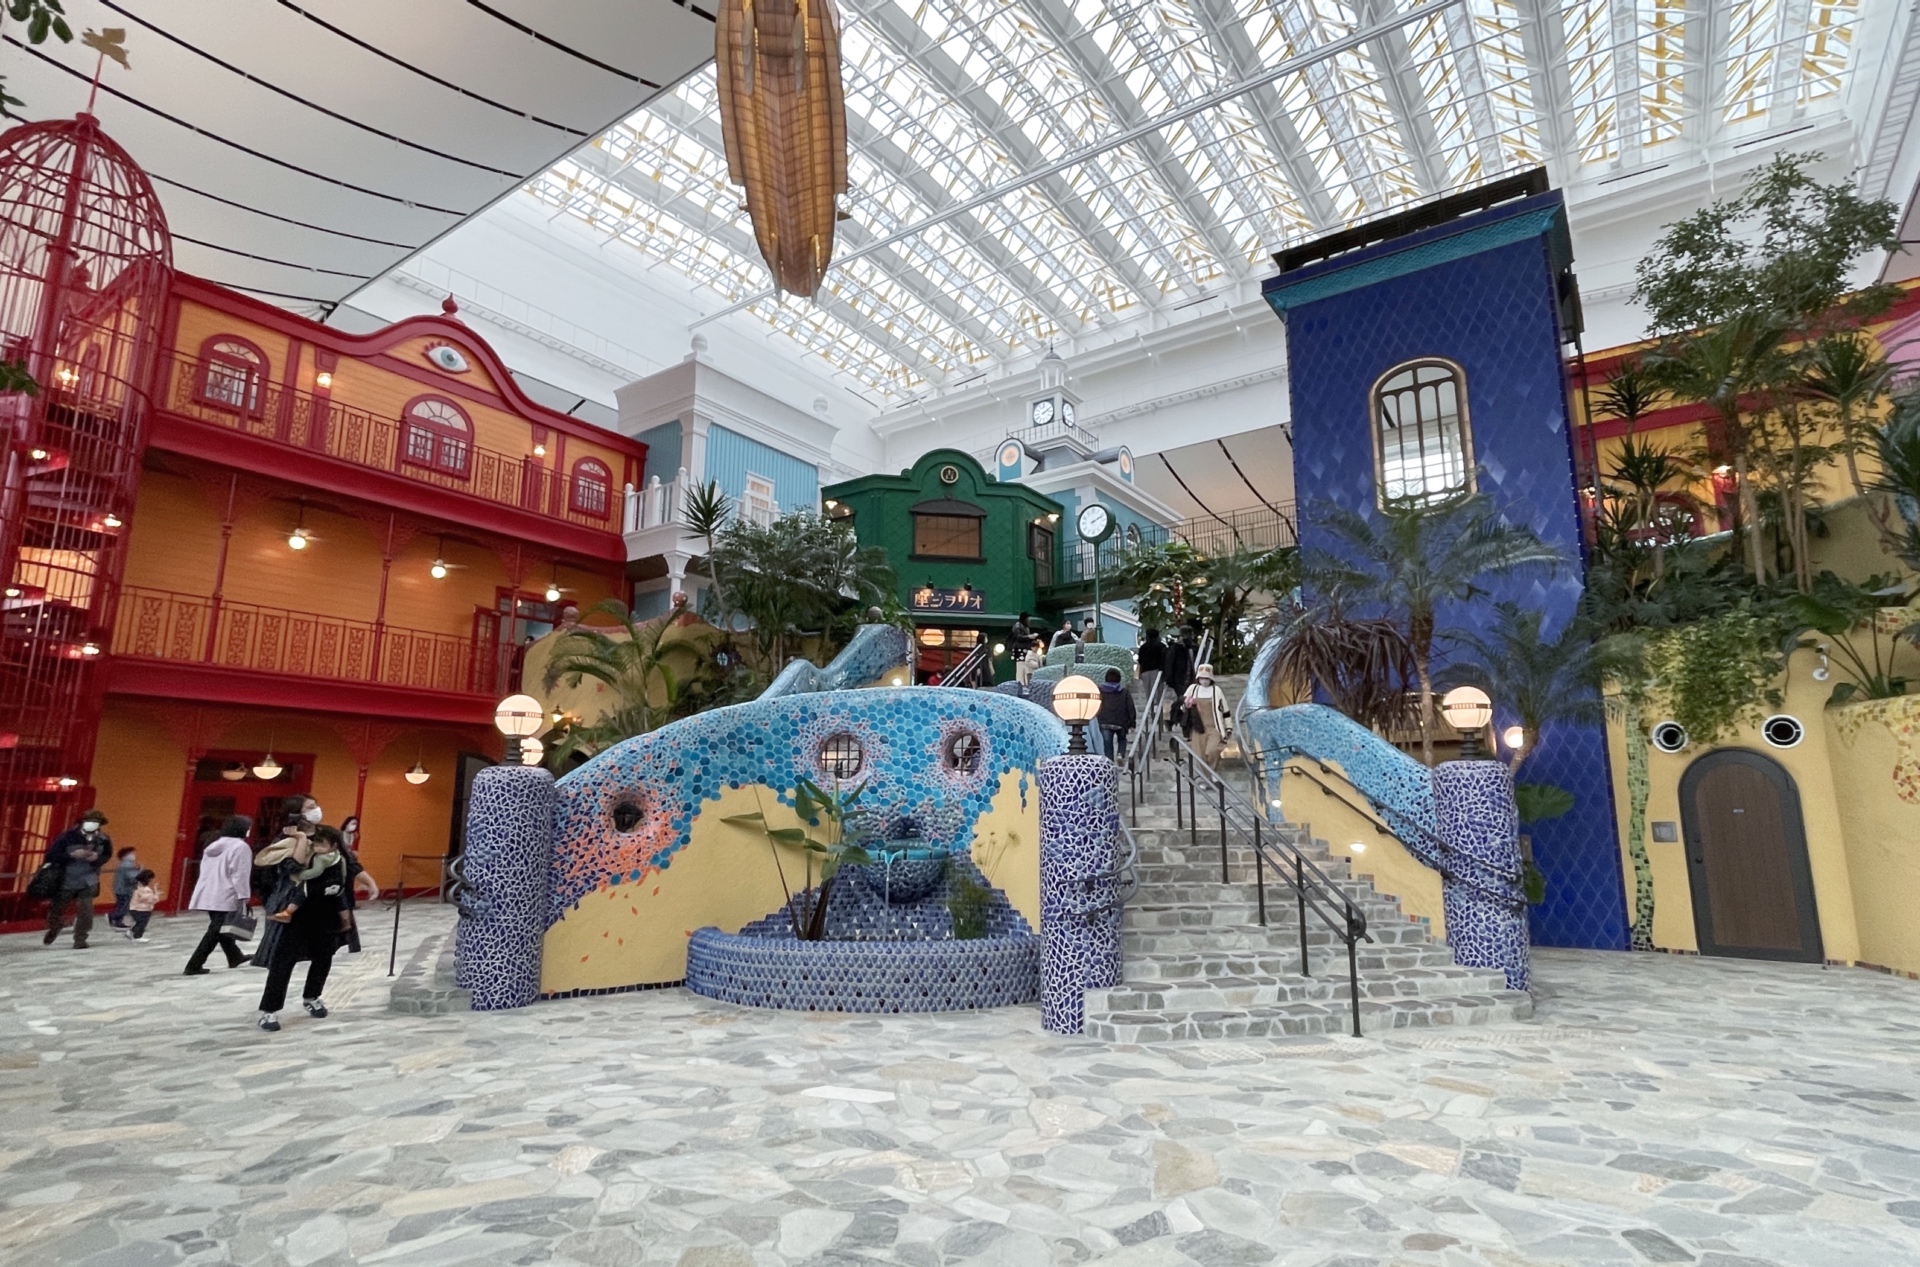 «Das grosse Lagerhaus» ist das zentrale Areal des Ghibli-Parks.